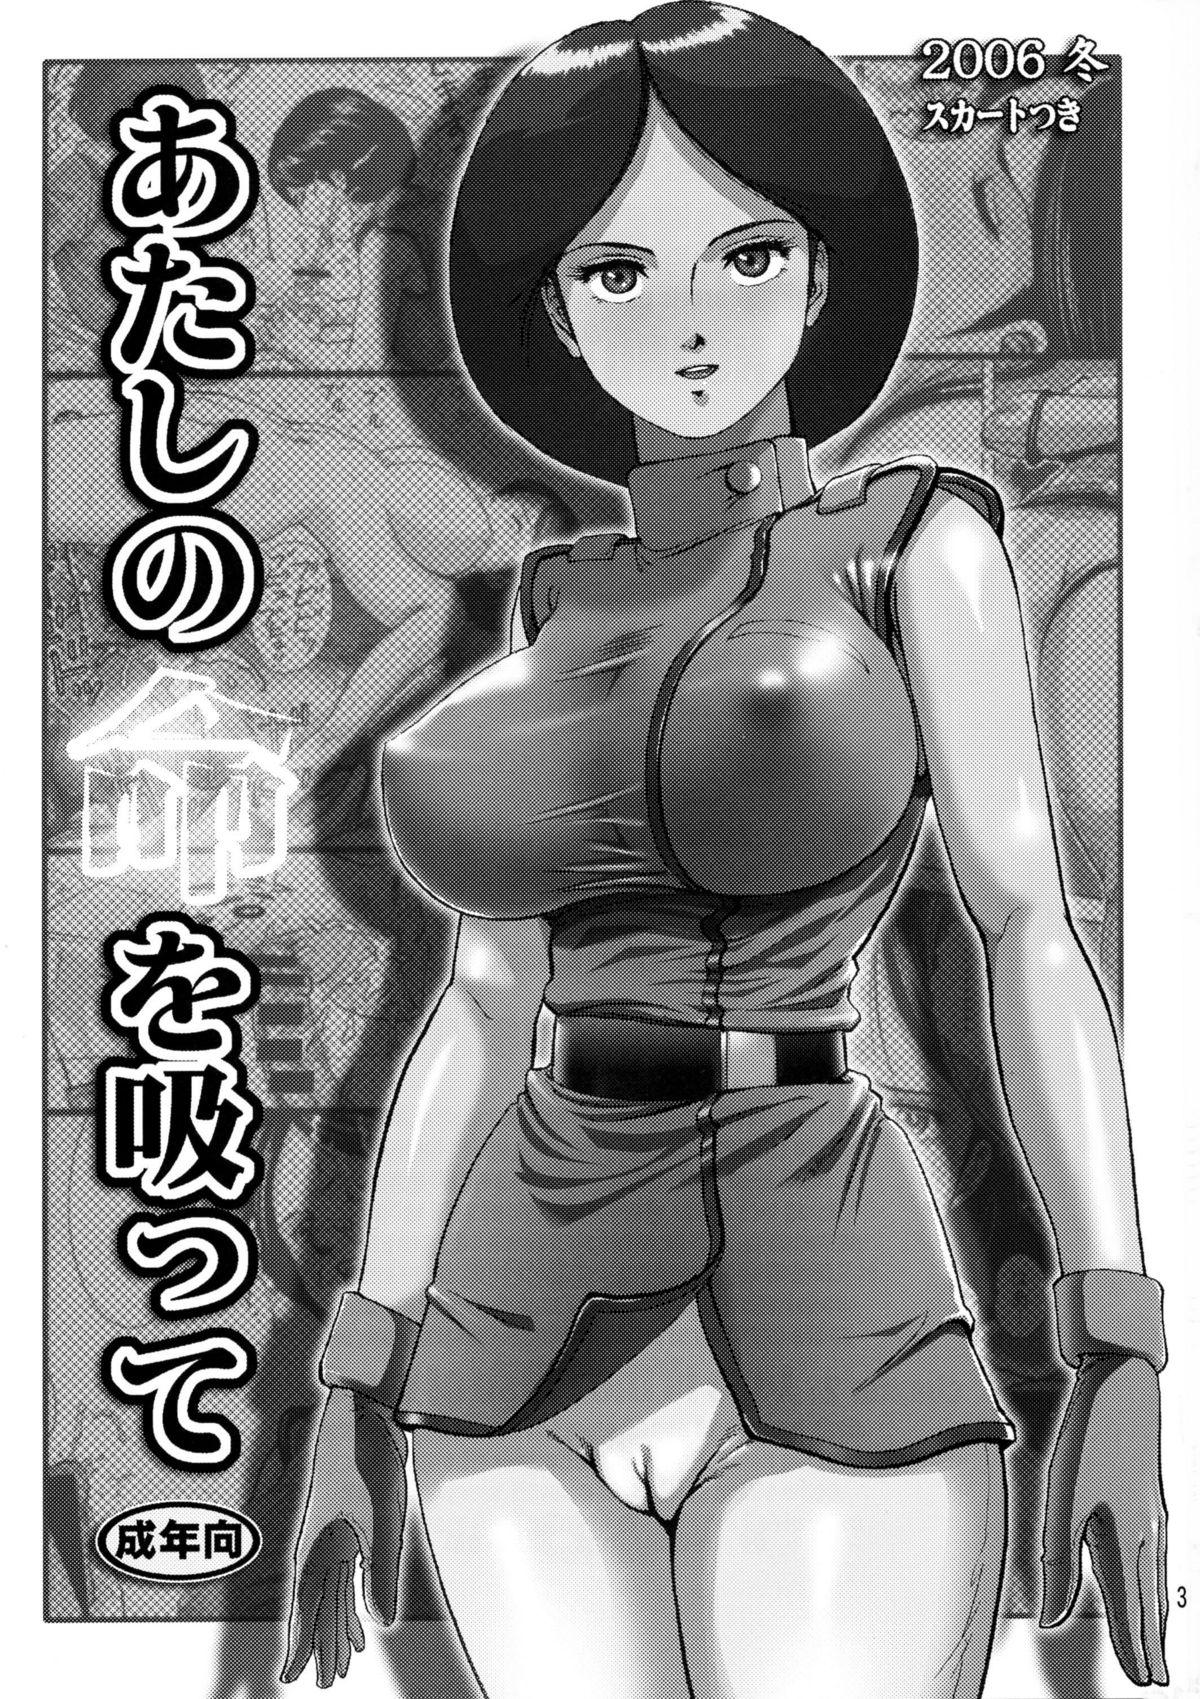 Role Play Atashi no Inochi wo Sutte - Zeta gundam Porn - Page 2